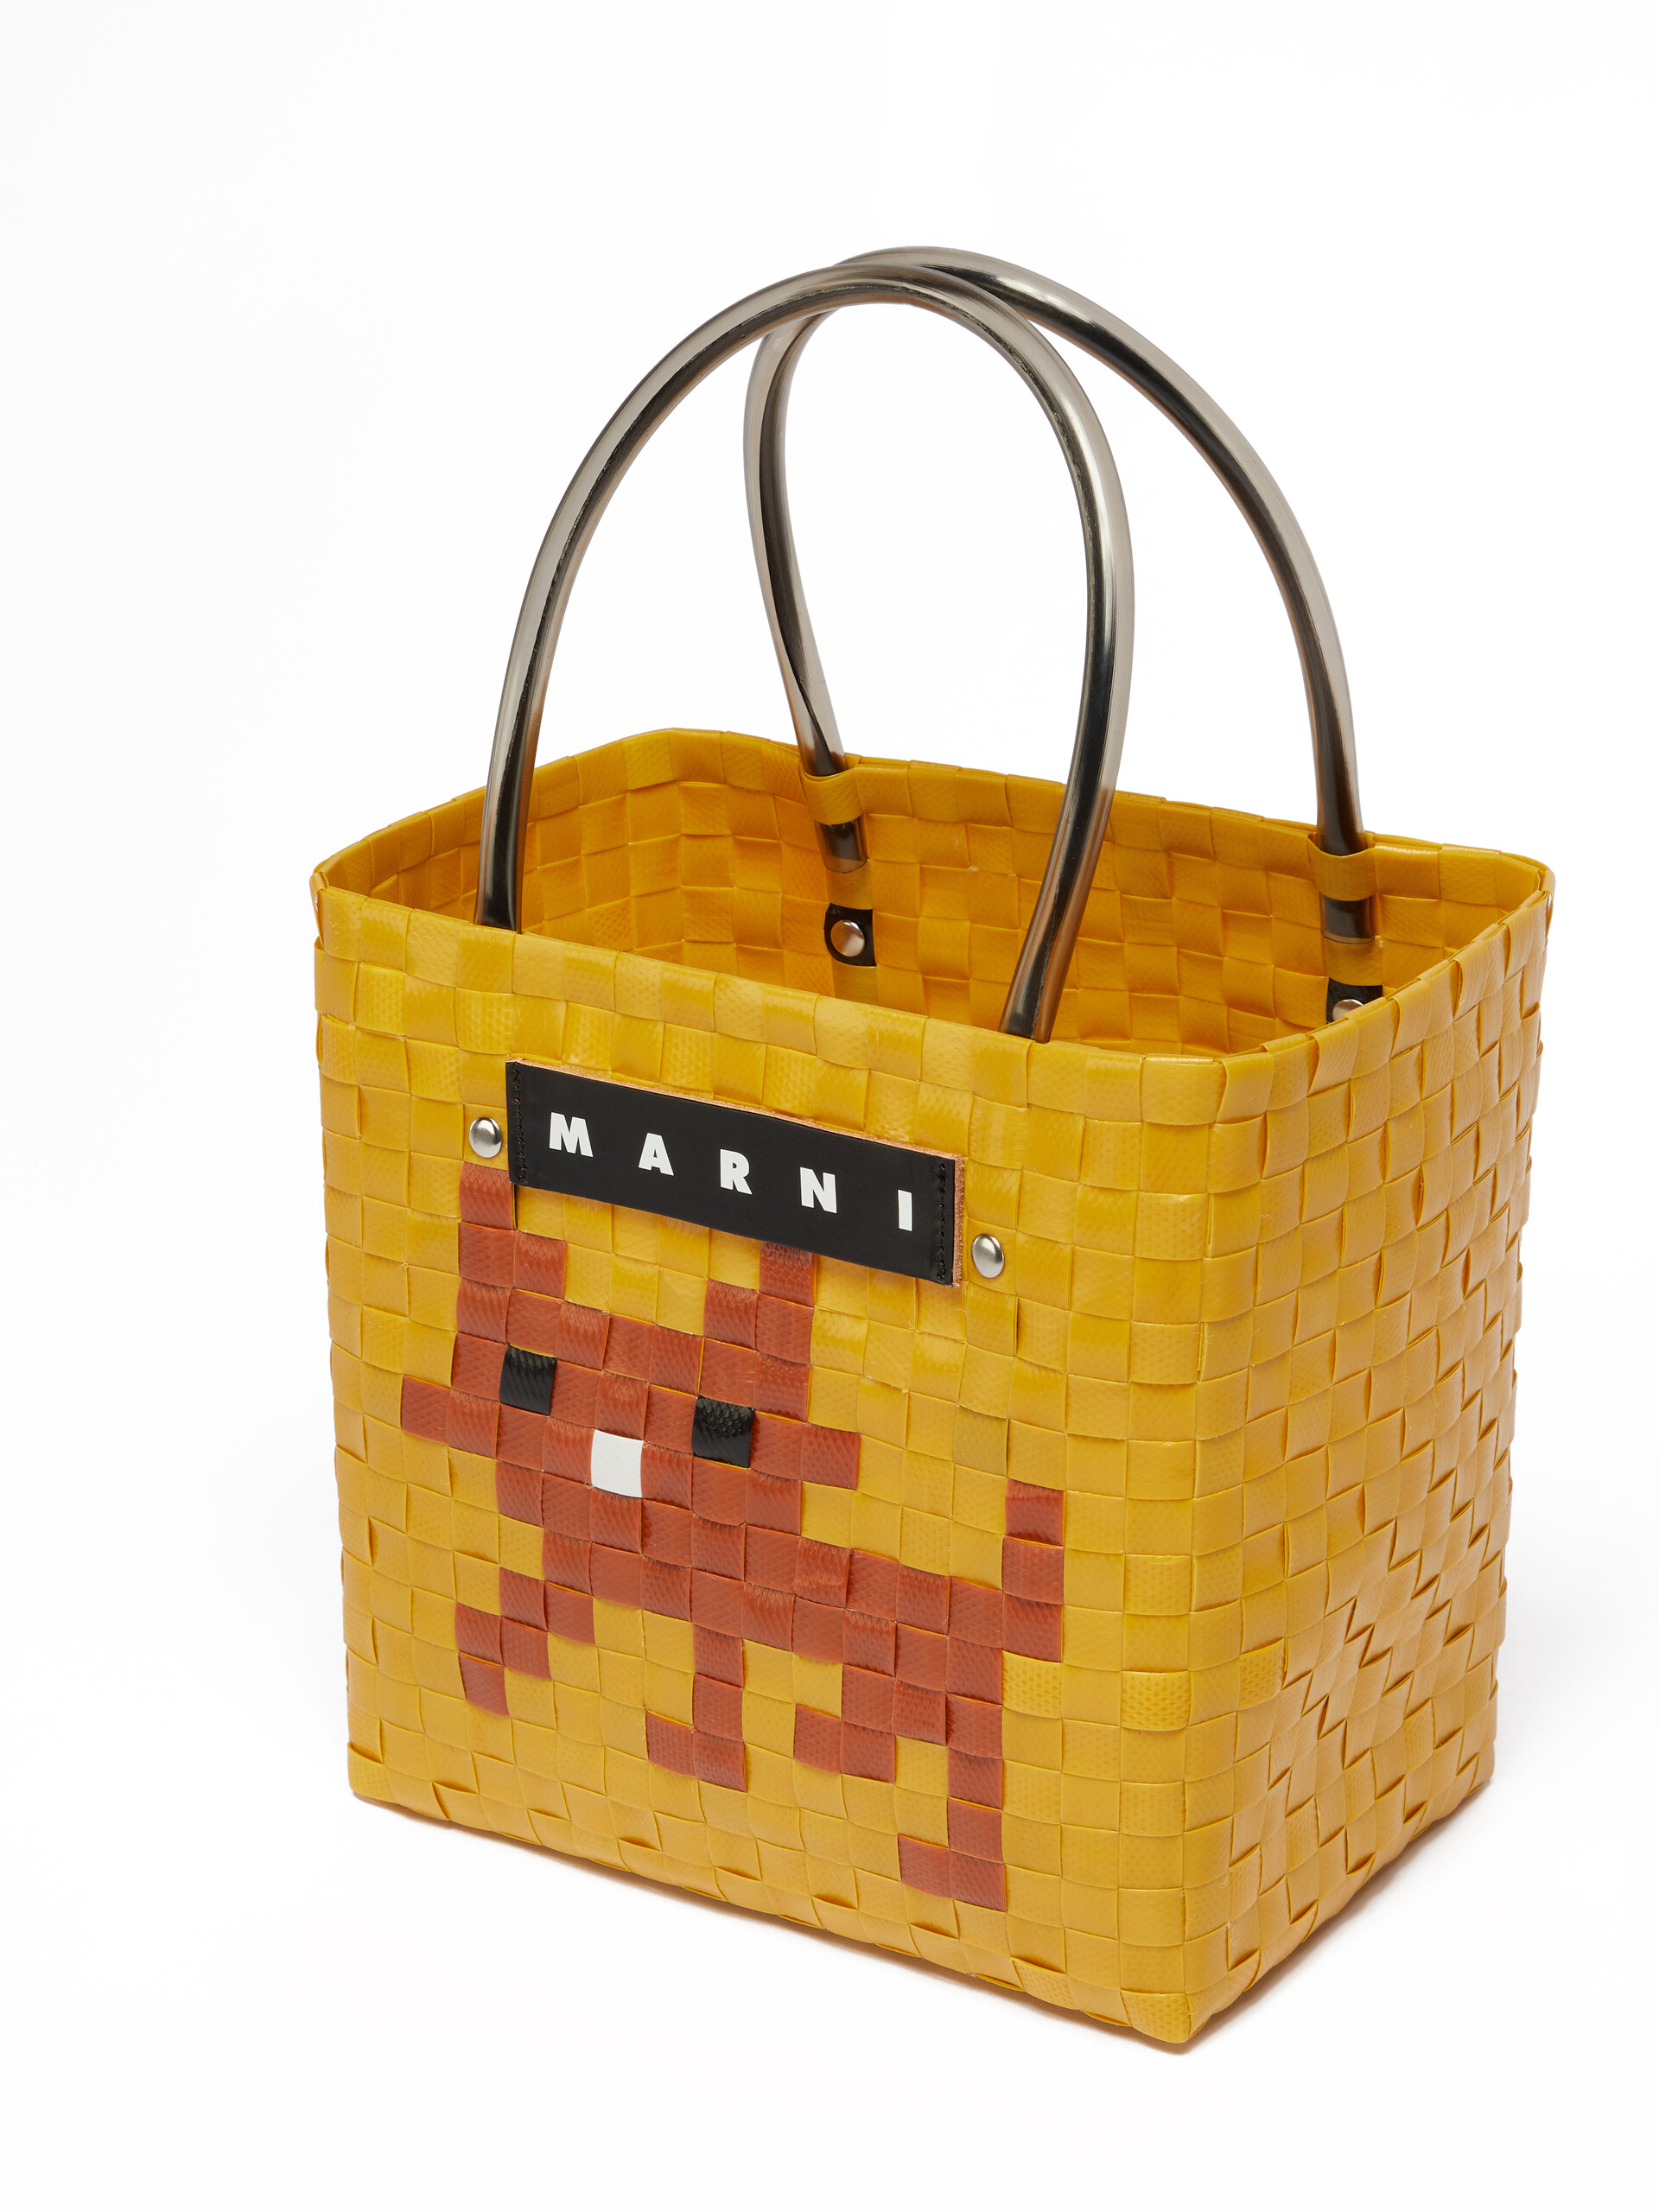 Bolso MARNI MARKET ANIMAL BASKET amarillo y marrón - Bolsos shopper - Image 4